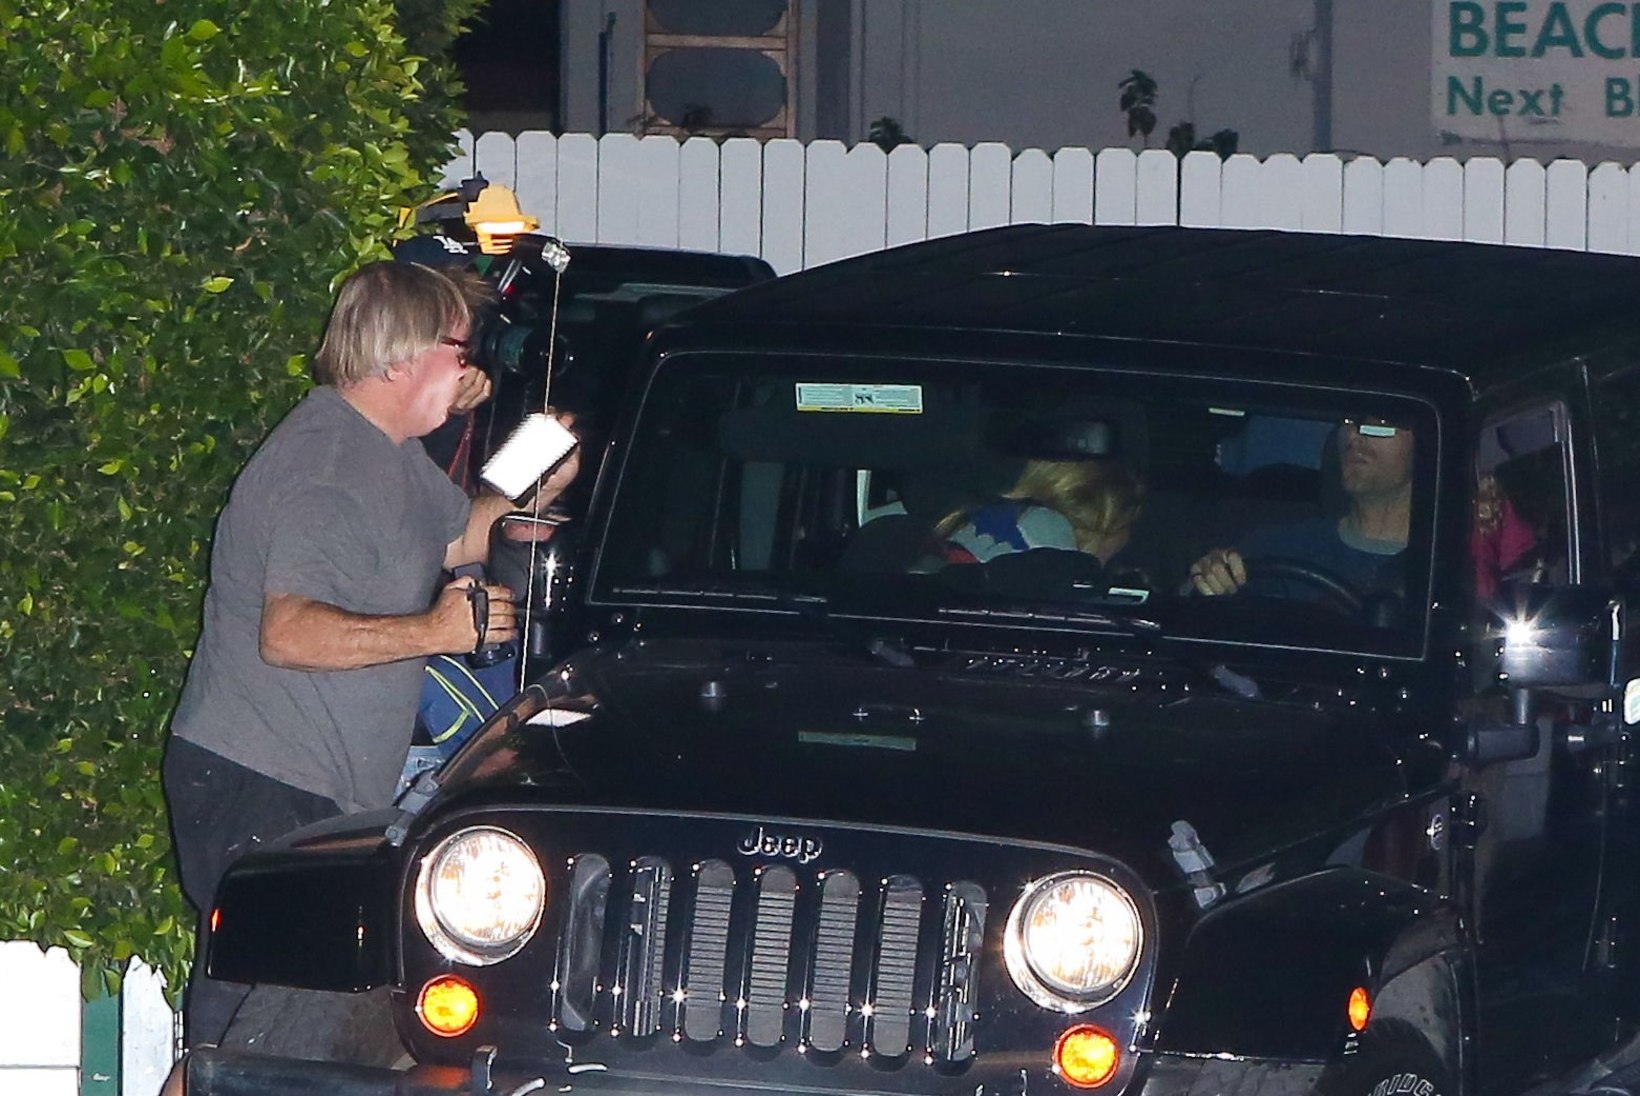 FOTOD: Gwyneth Paltrowga õhtustamas käinud Chris Martin sõitis kõmufotograafile otsa